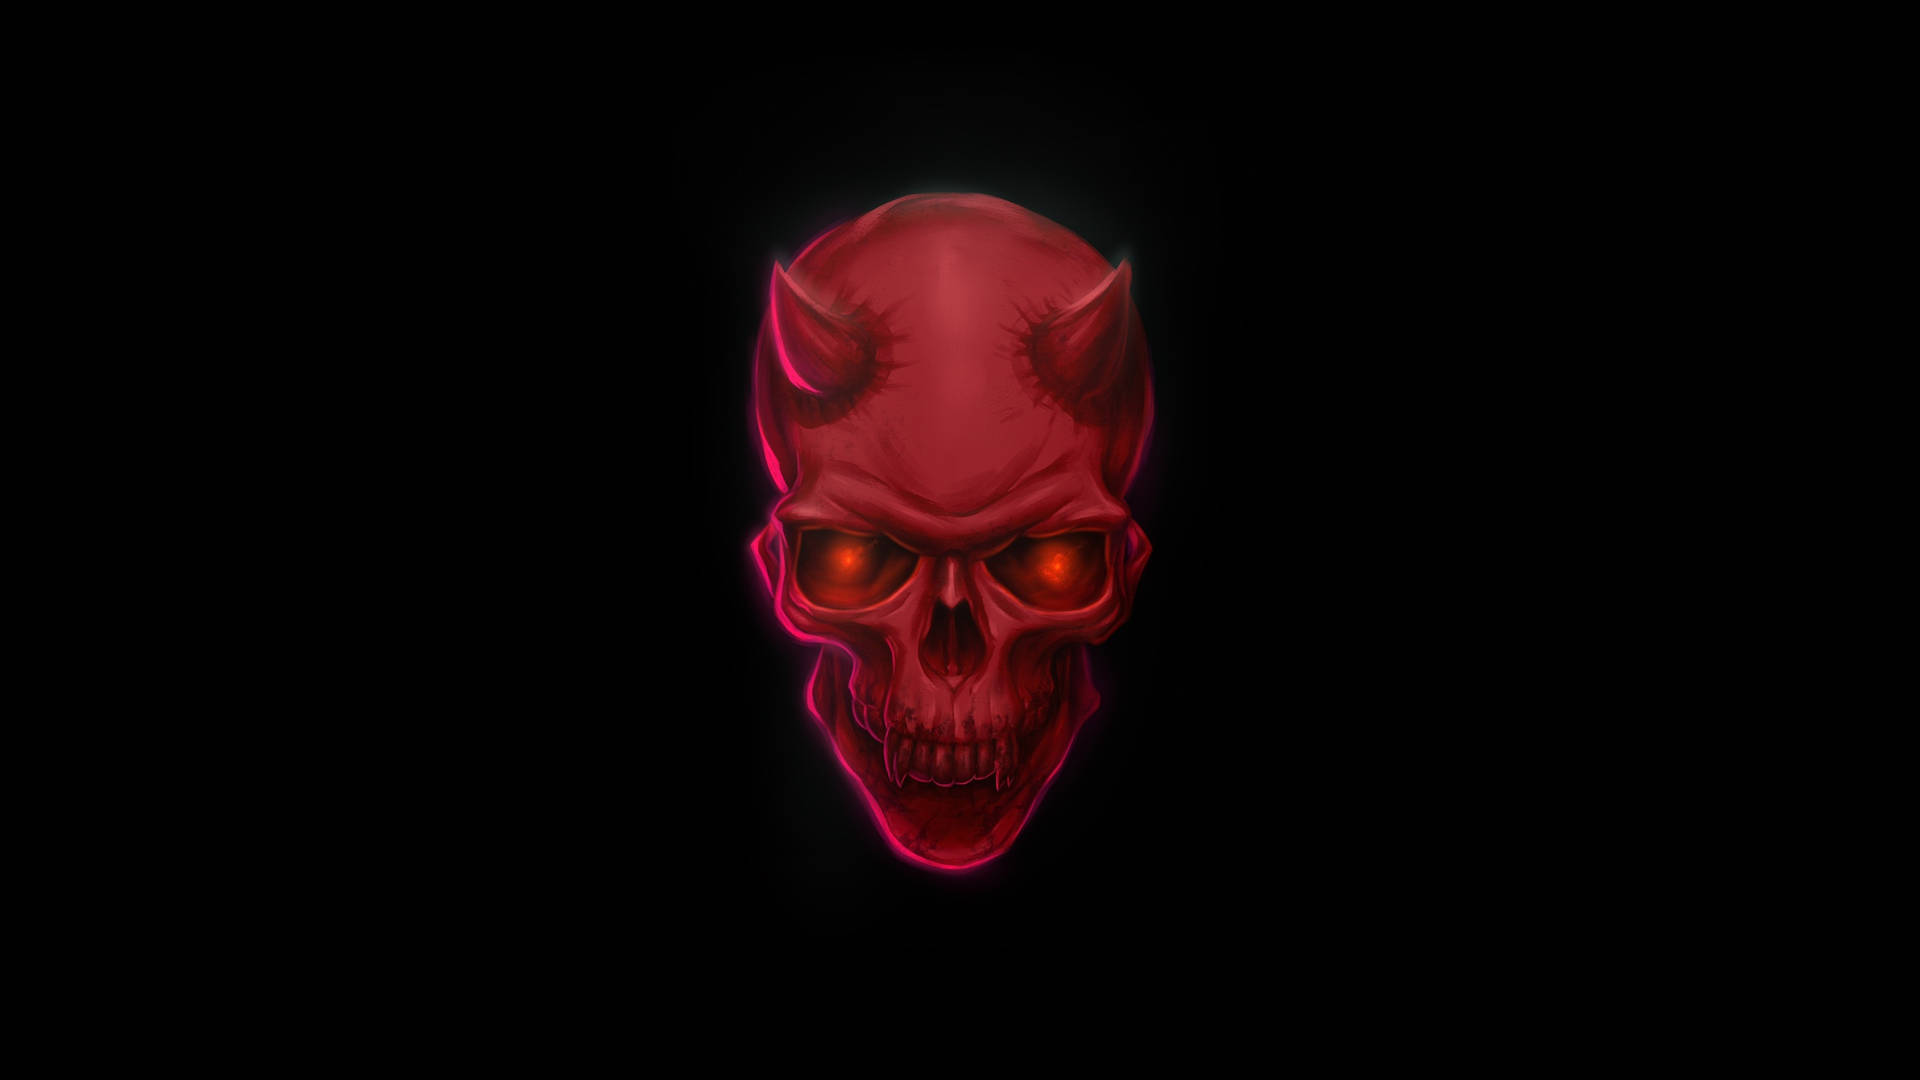 Cool Devil Red Skull